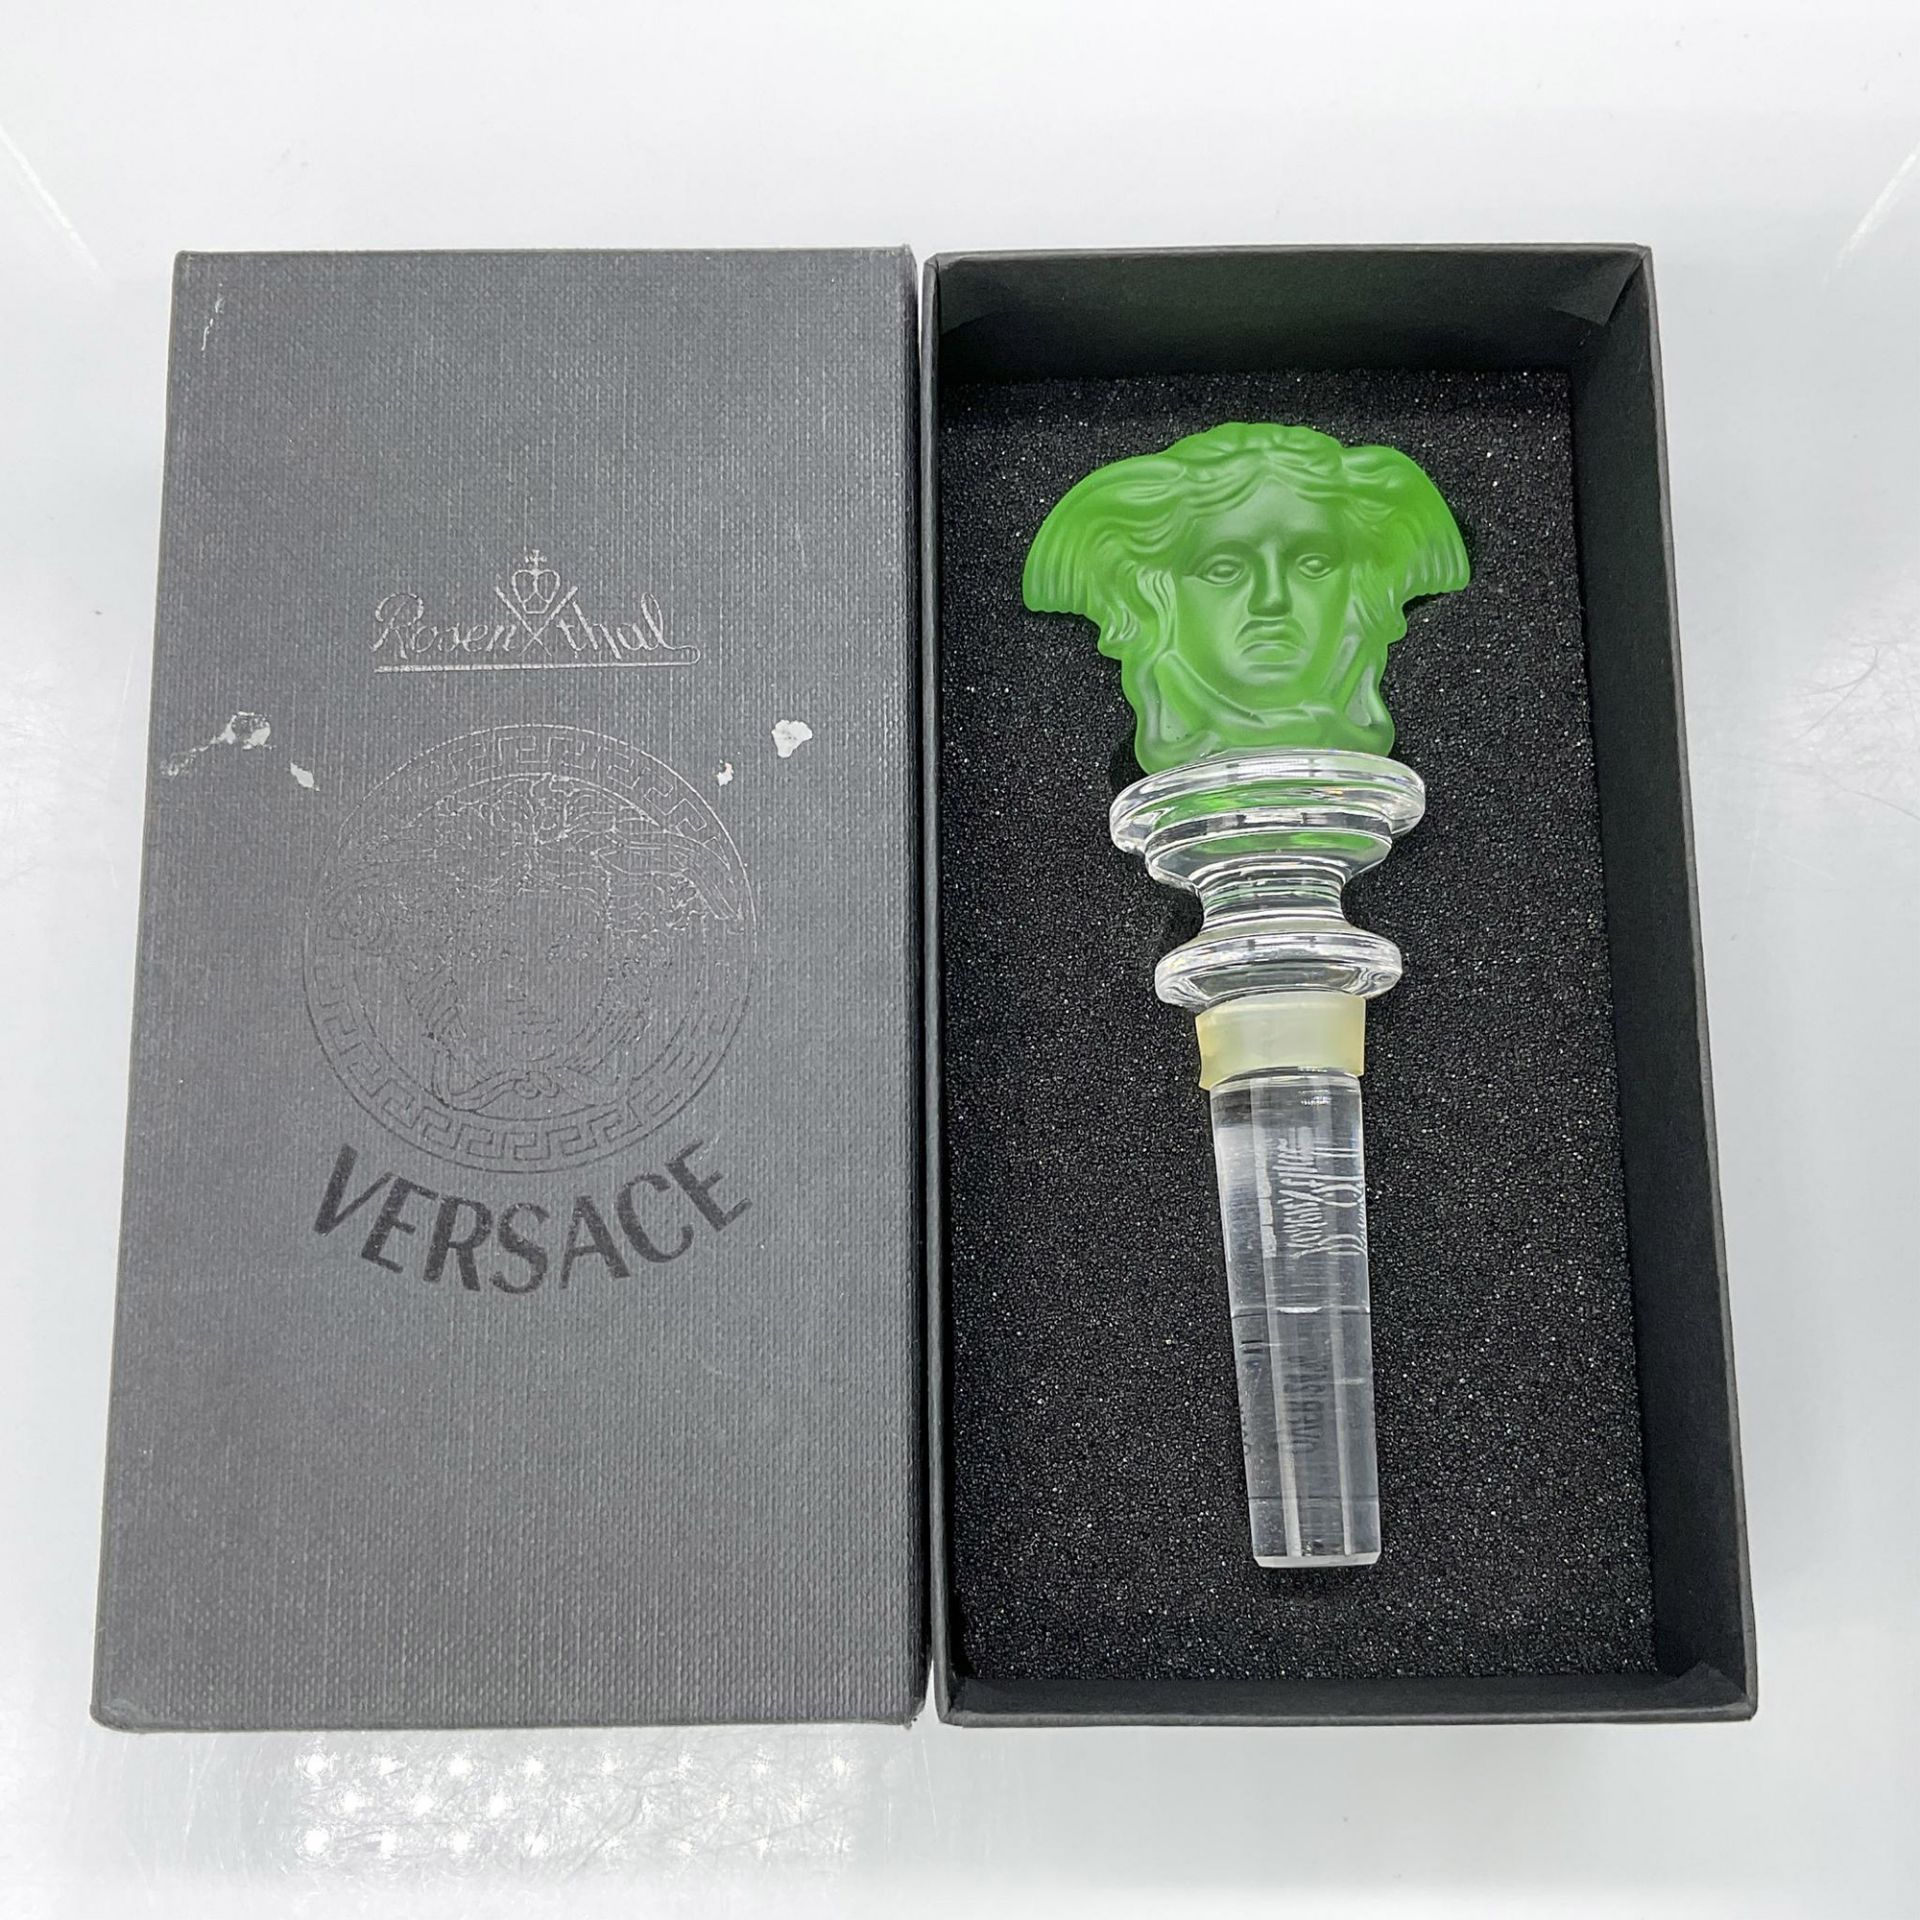 Rosenthal Versace Medusa Head Crystal Bottle Stopper, Green - Image 3 of 3